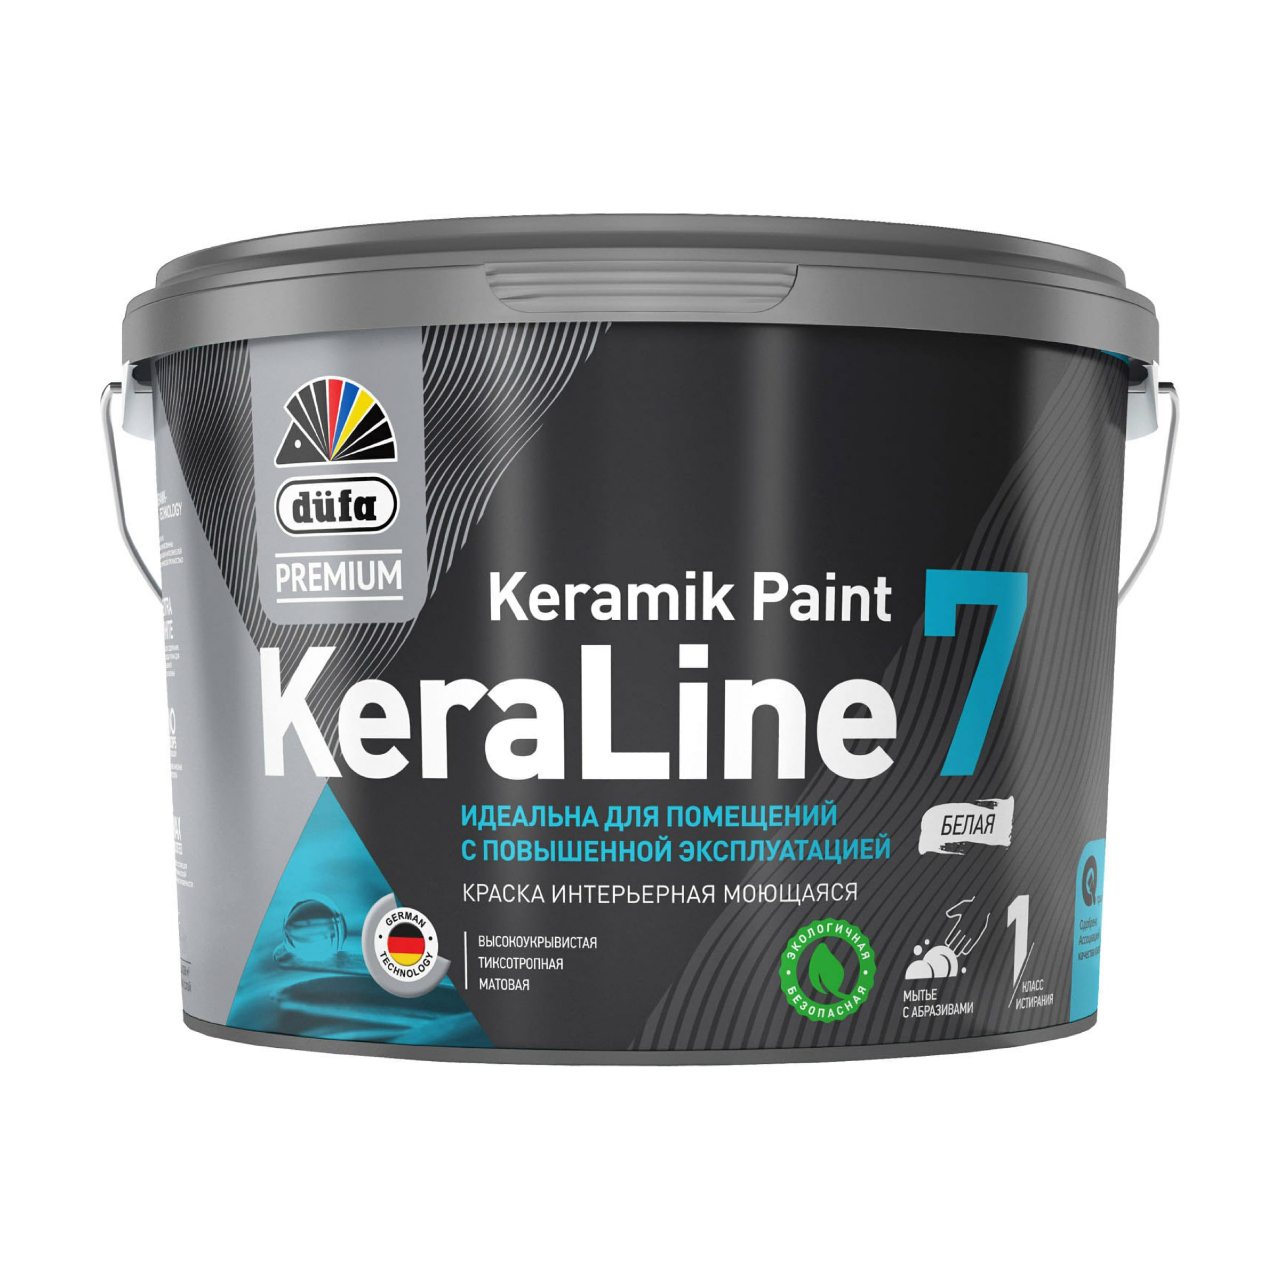 90190603 Краска для стен и потолков моющаяся Premium KeraLine Keramik Paint 7 матовая белая база 1 2.5 л STLM-0126755 DUFA